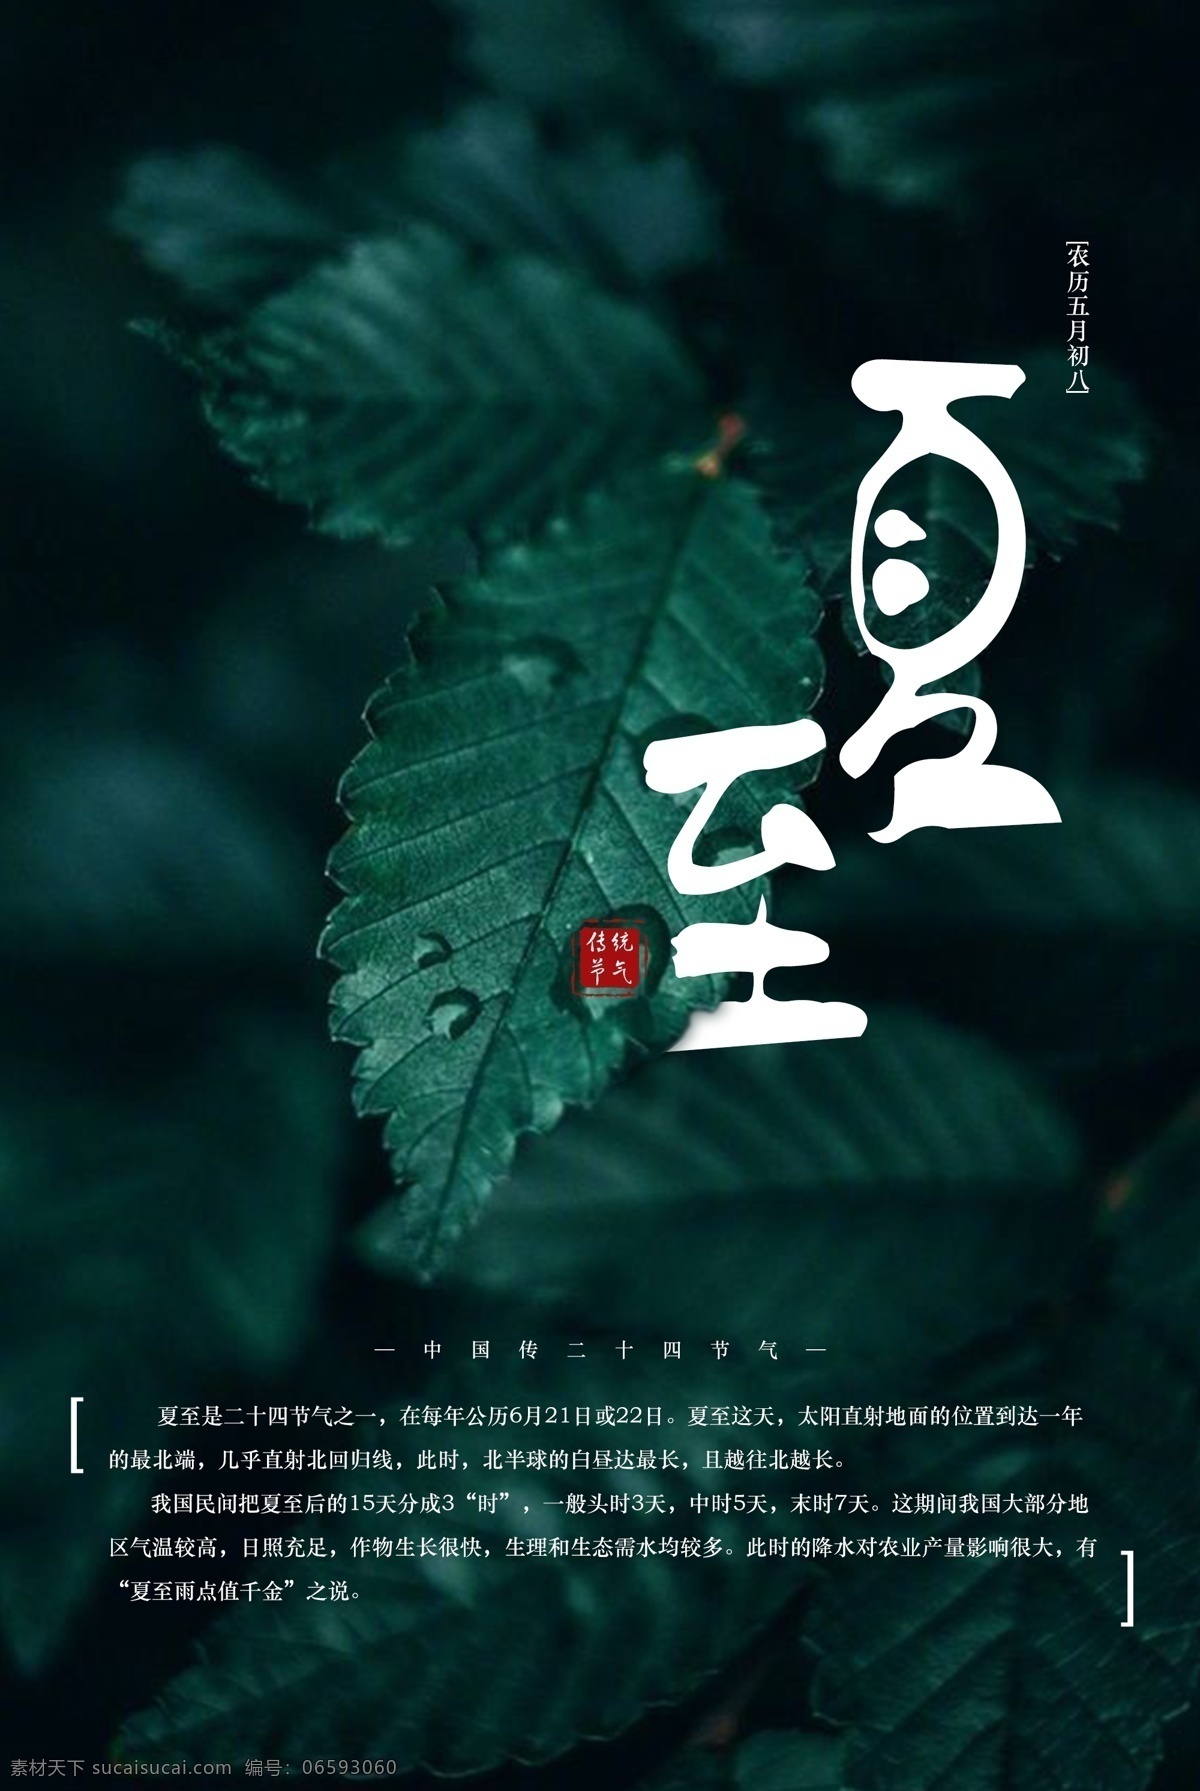 中国 二十四节气 夏至 海报 传统节气 绿色 叶子海报